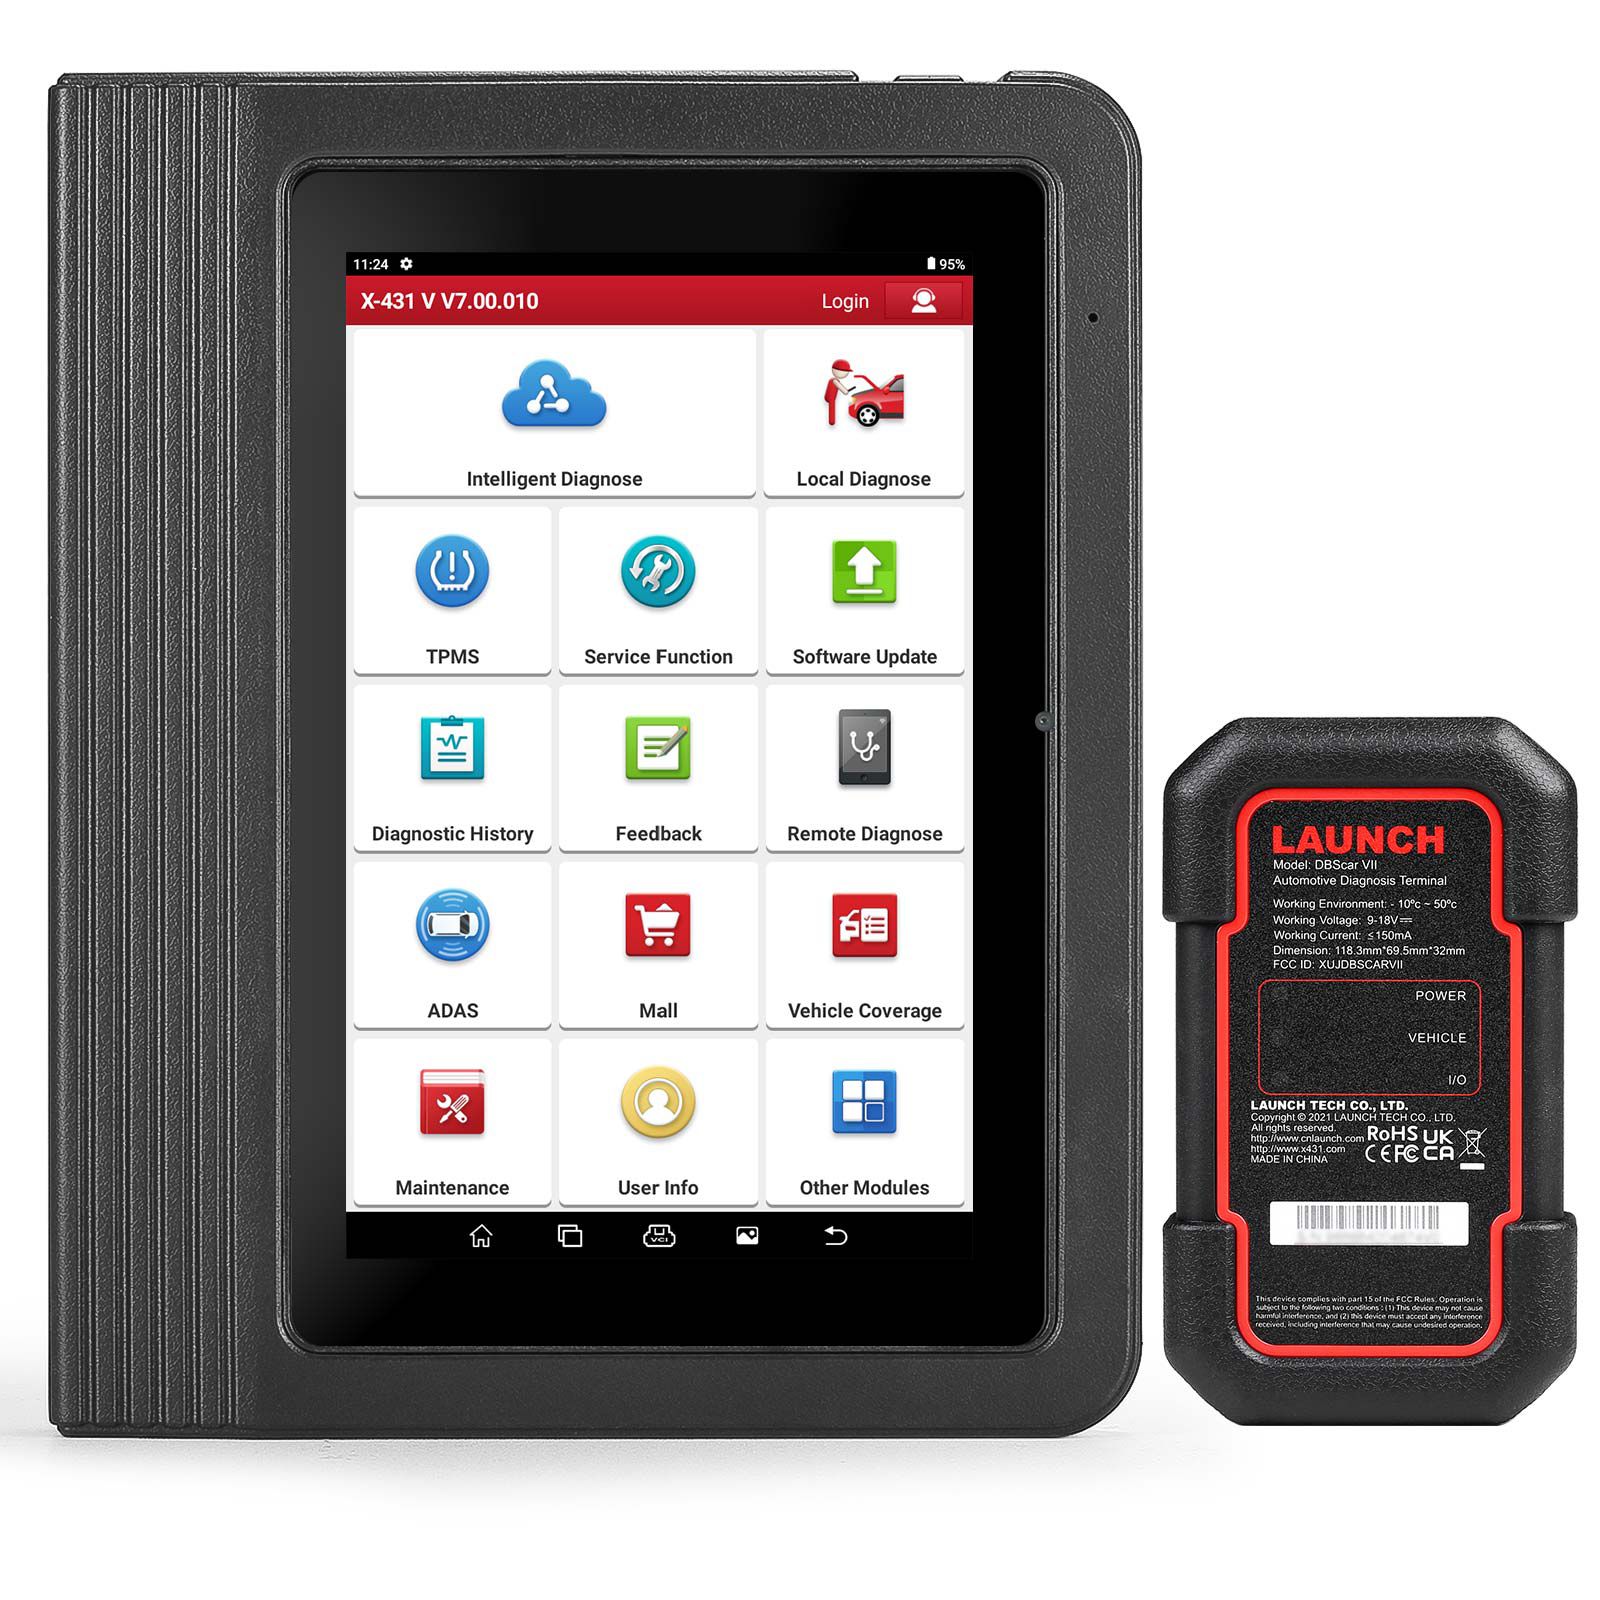 La tableta inalámbrica / Bluetooth x431 V (x431 pro) lanzada originalmente se actualiza en línea de forma gratuita durante dos años.